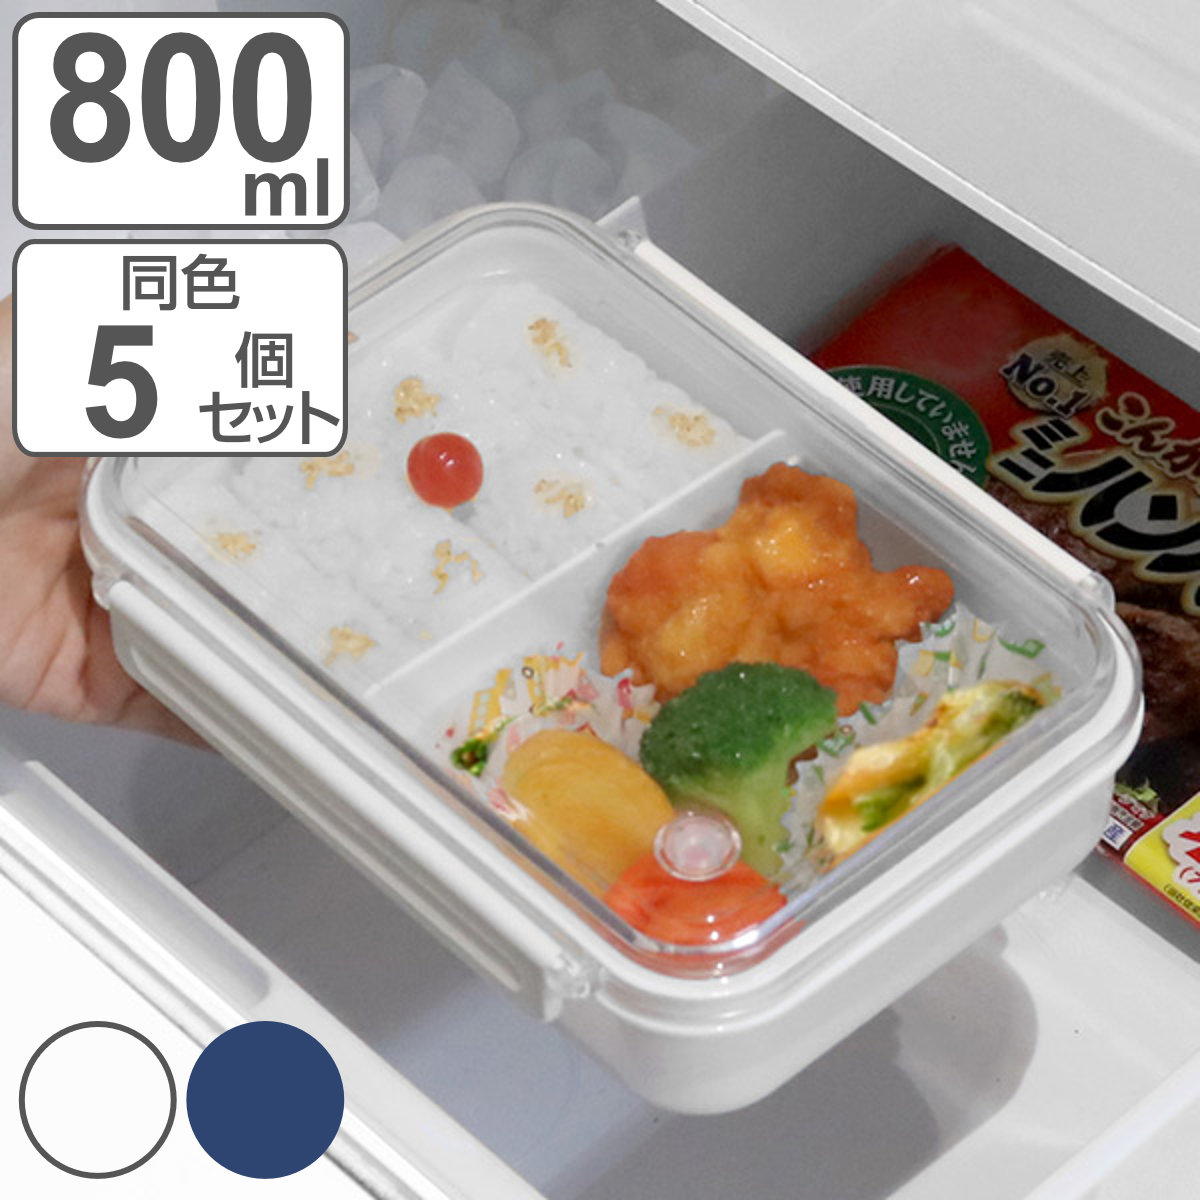 お弁当箱 1段 まるごと冷凍弁当 800ml 2個セット タイトボックス 